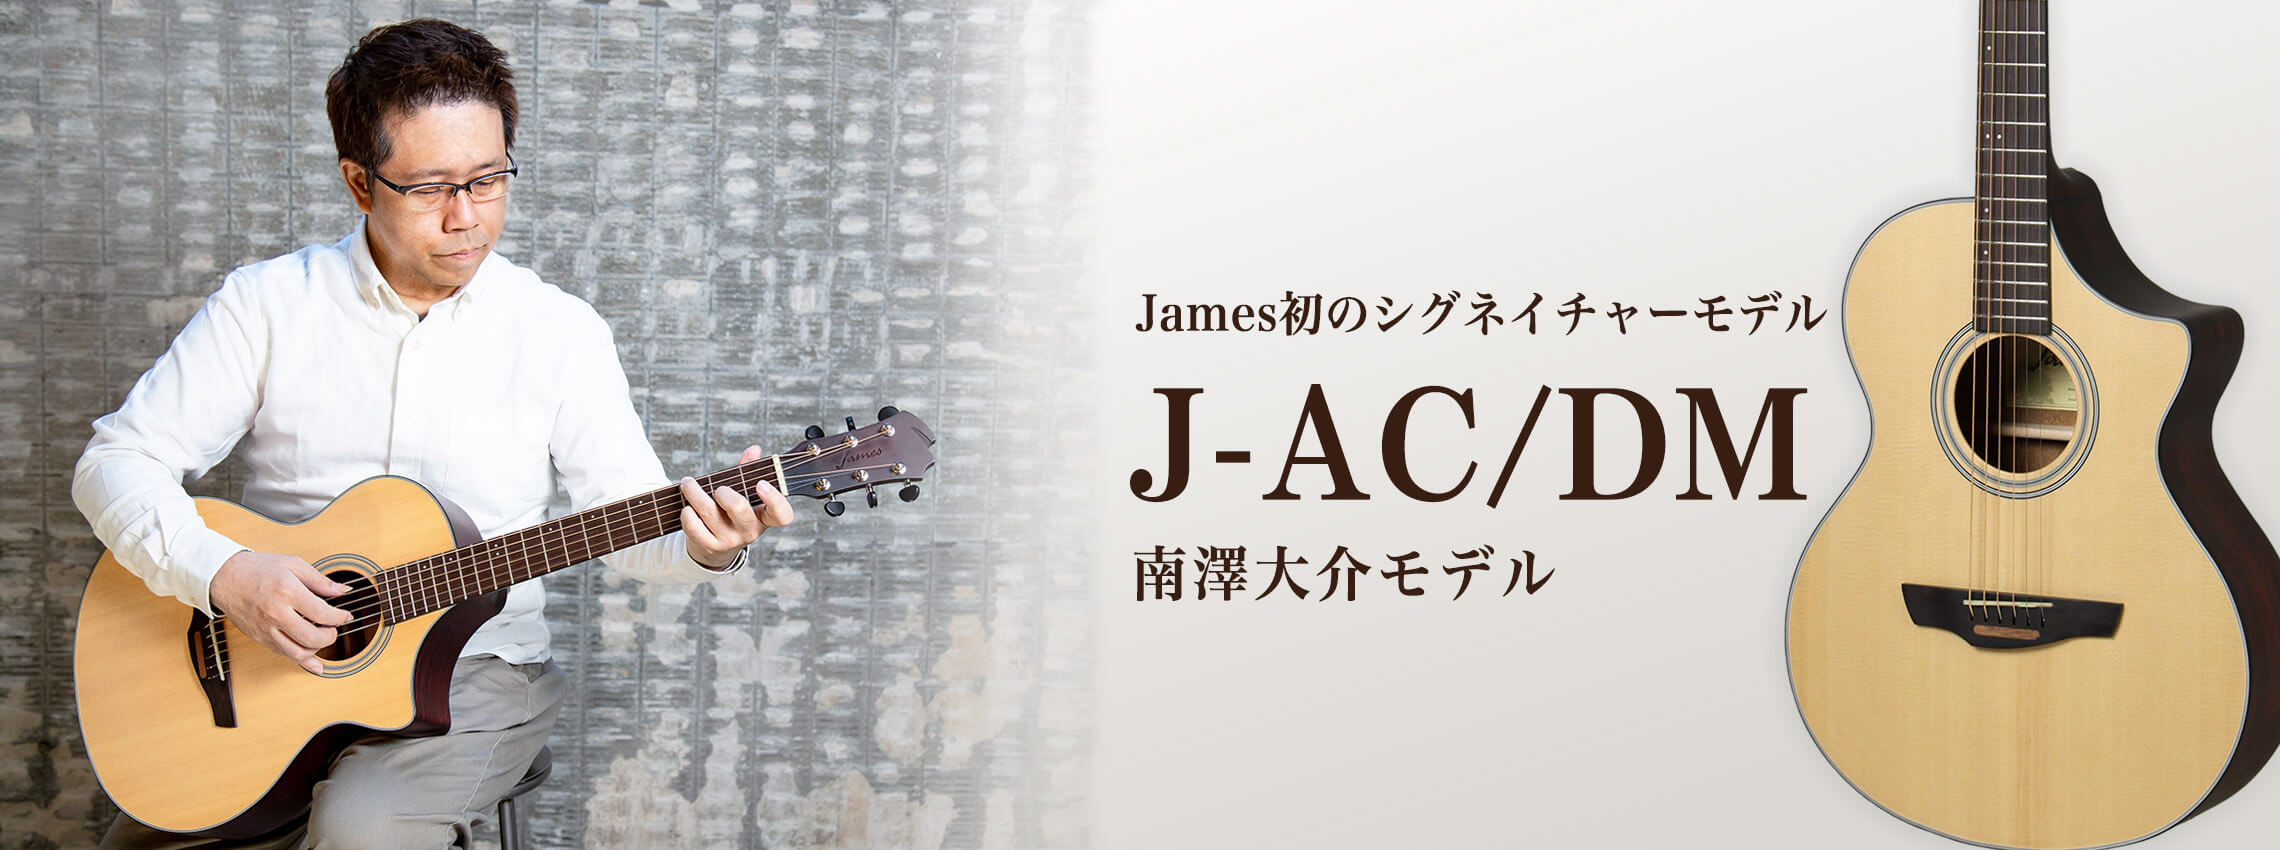 Jamesと南澤大介氏のコラボレーションギターが入荷！2月16日には南澤大介氏によるセミナーも開催致します！